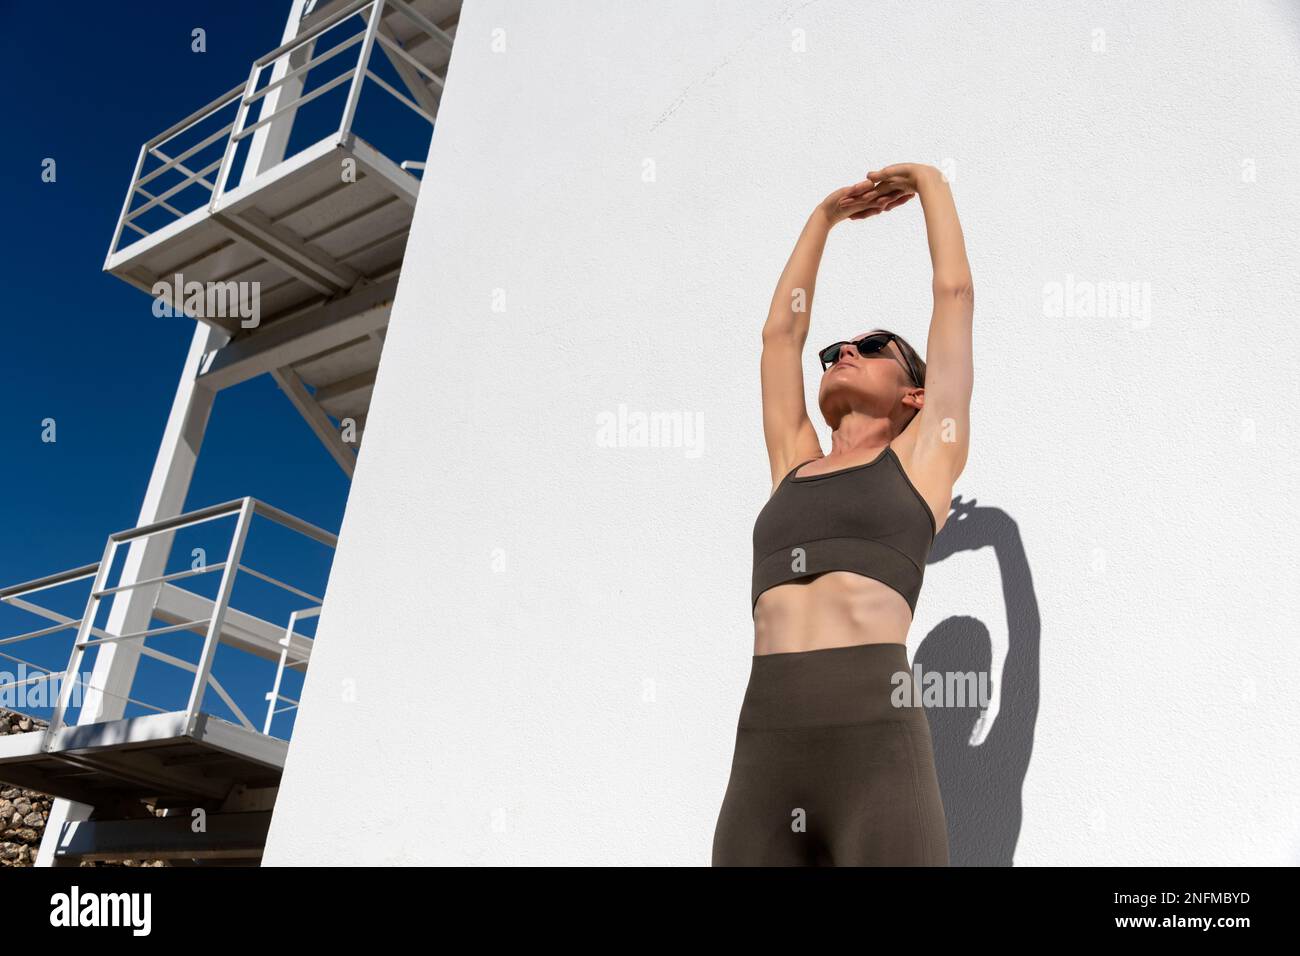 Fit Frau streckt Arme vor dem Fitnesstraining Stockfoto